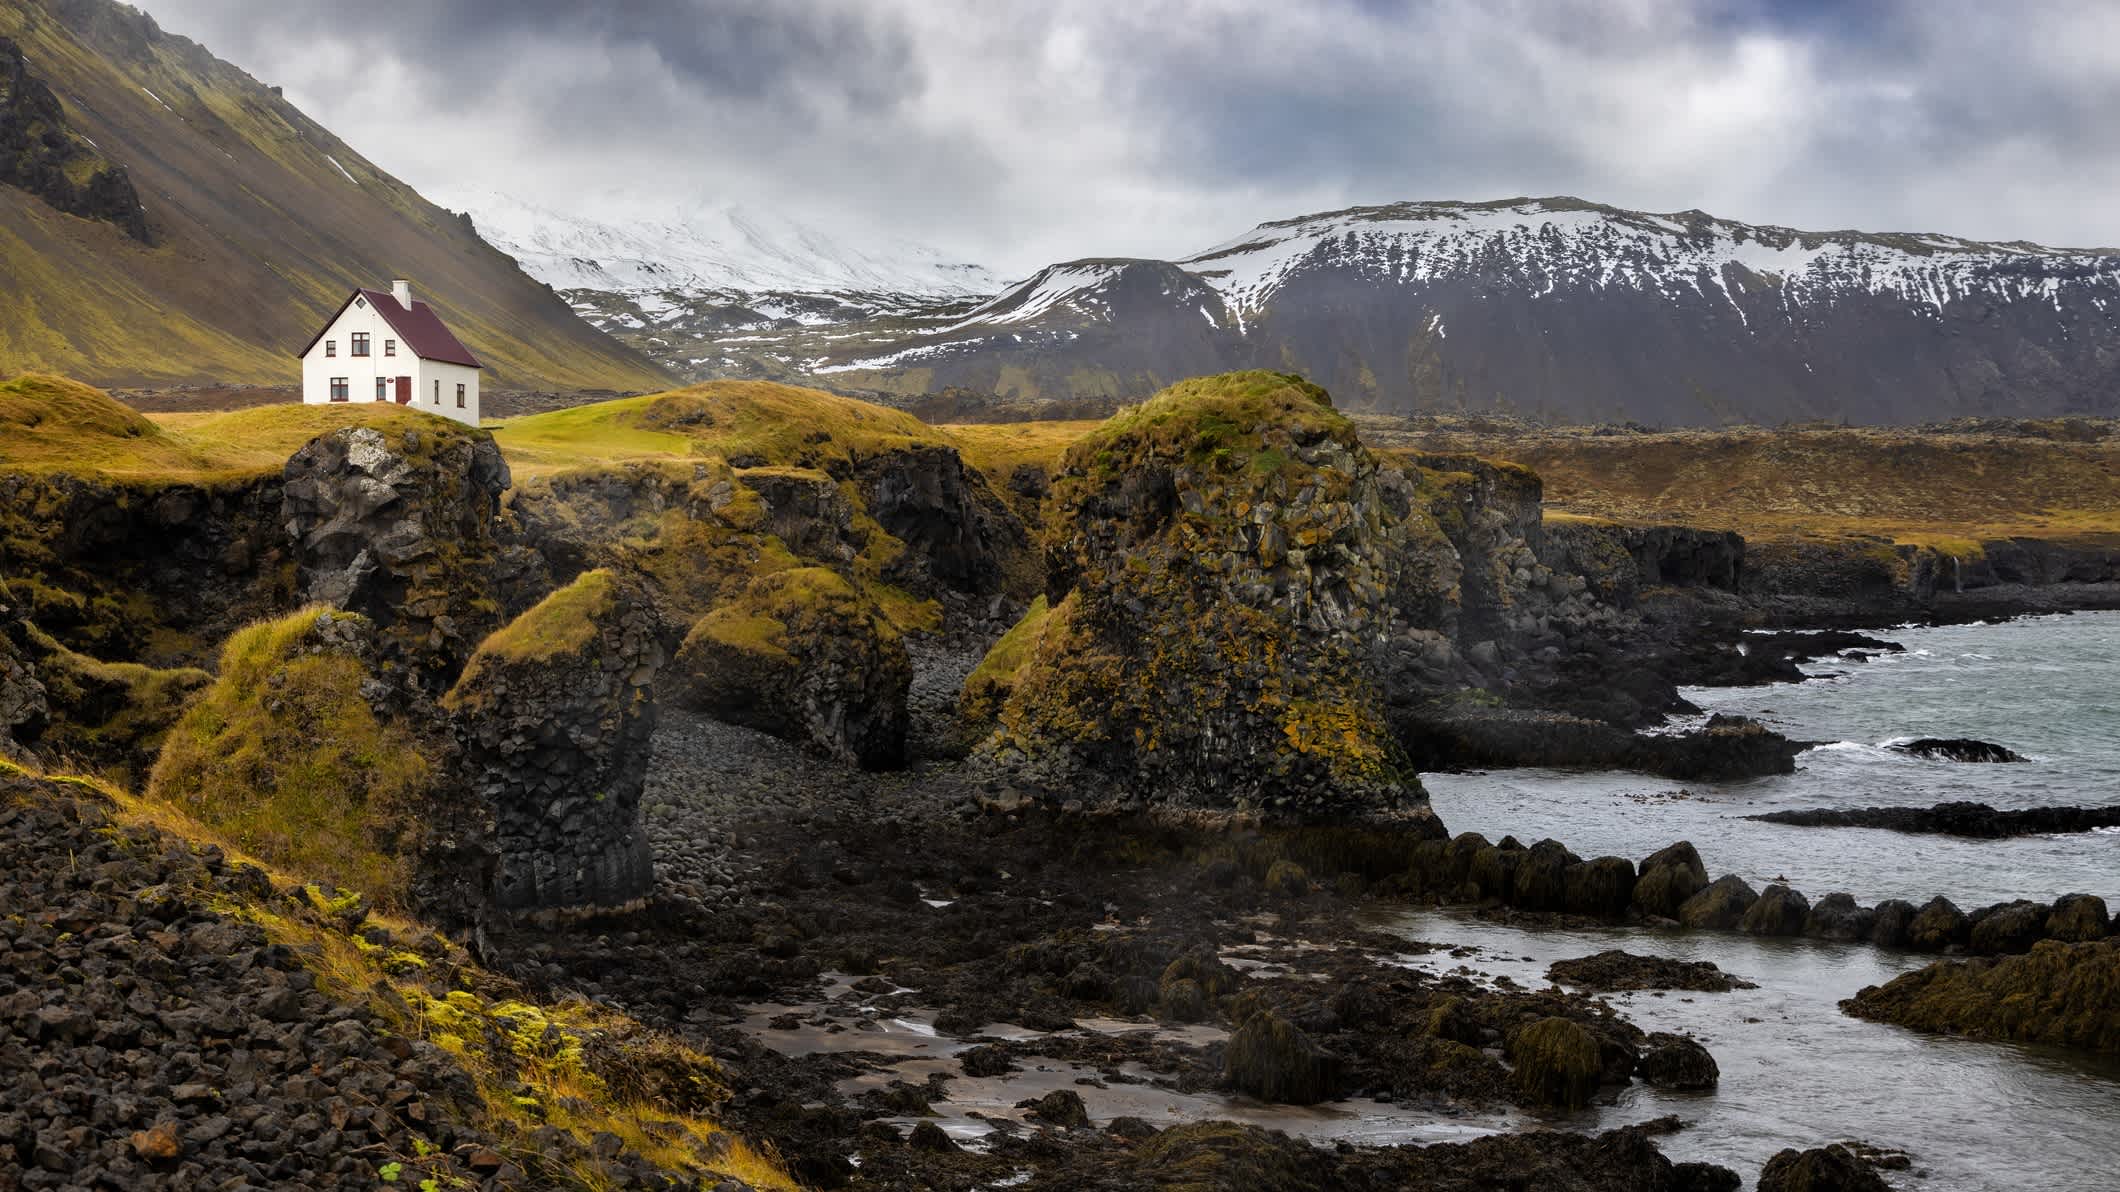 La côte déchiquetée de l'île d'Arnarstapi, péninsule de Snaefellsnes, Islande.

